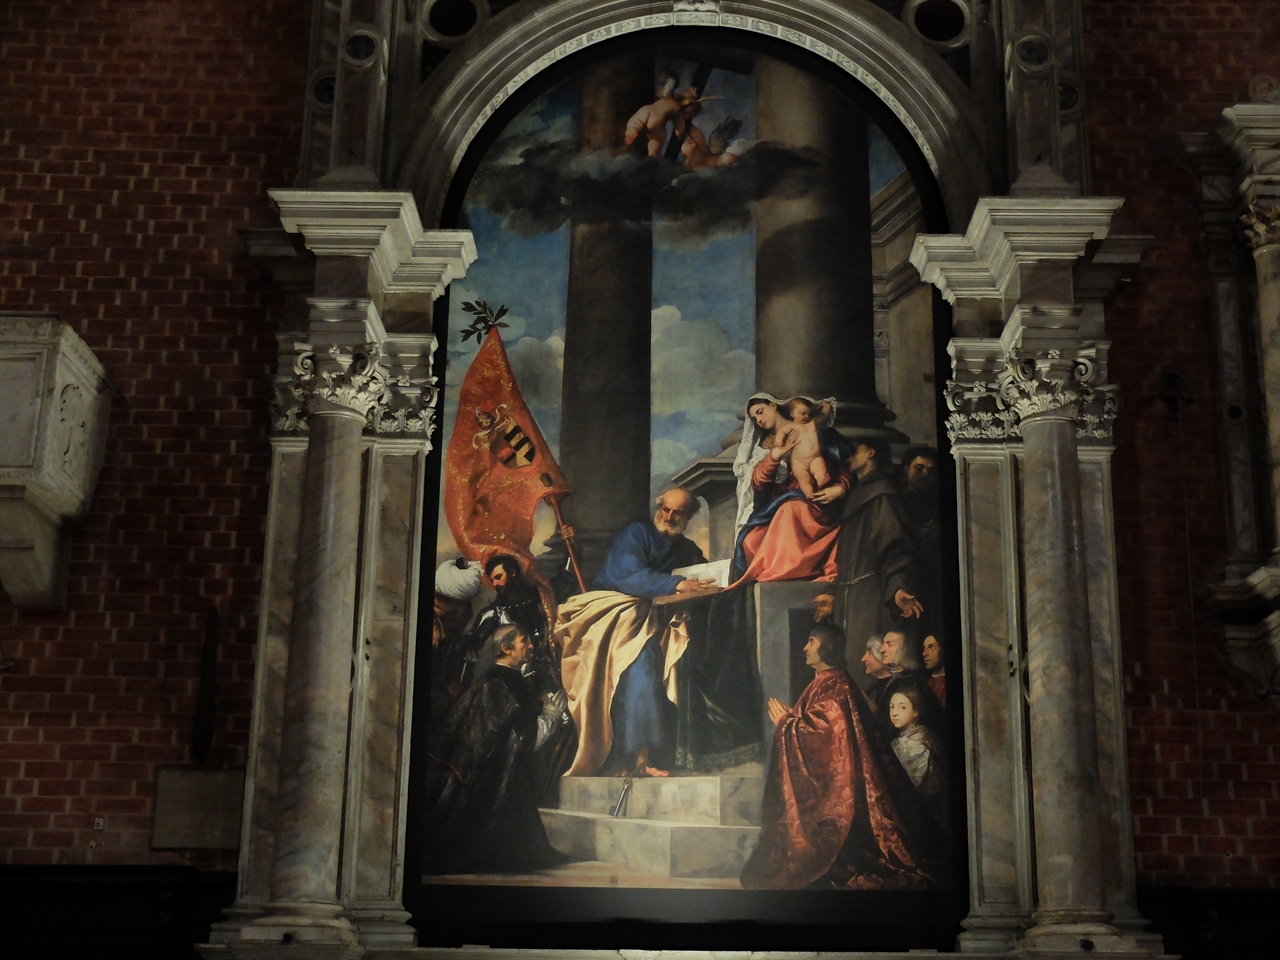  티치아노, ‘페사로의 제단화’, 베네치아 산타 마리아 글로리오사 데이 프라리 성당. 슬며시 비틀어진 소실점은 이후 다양한 구도를 만들 수 있는 근거가 되었습니다. 